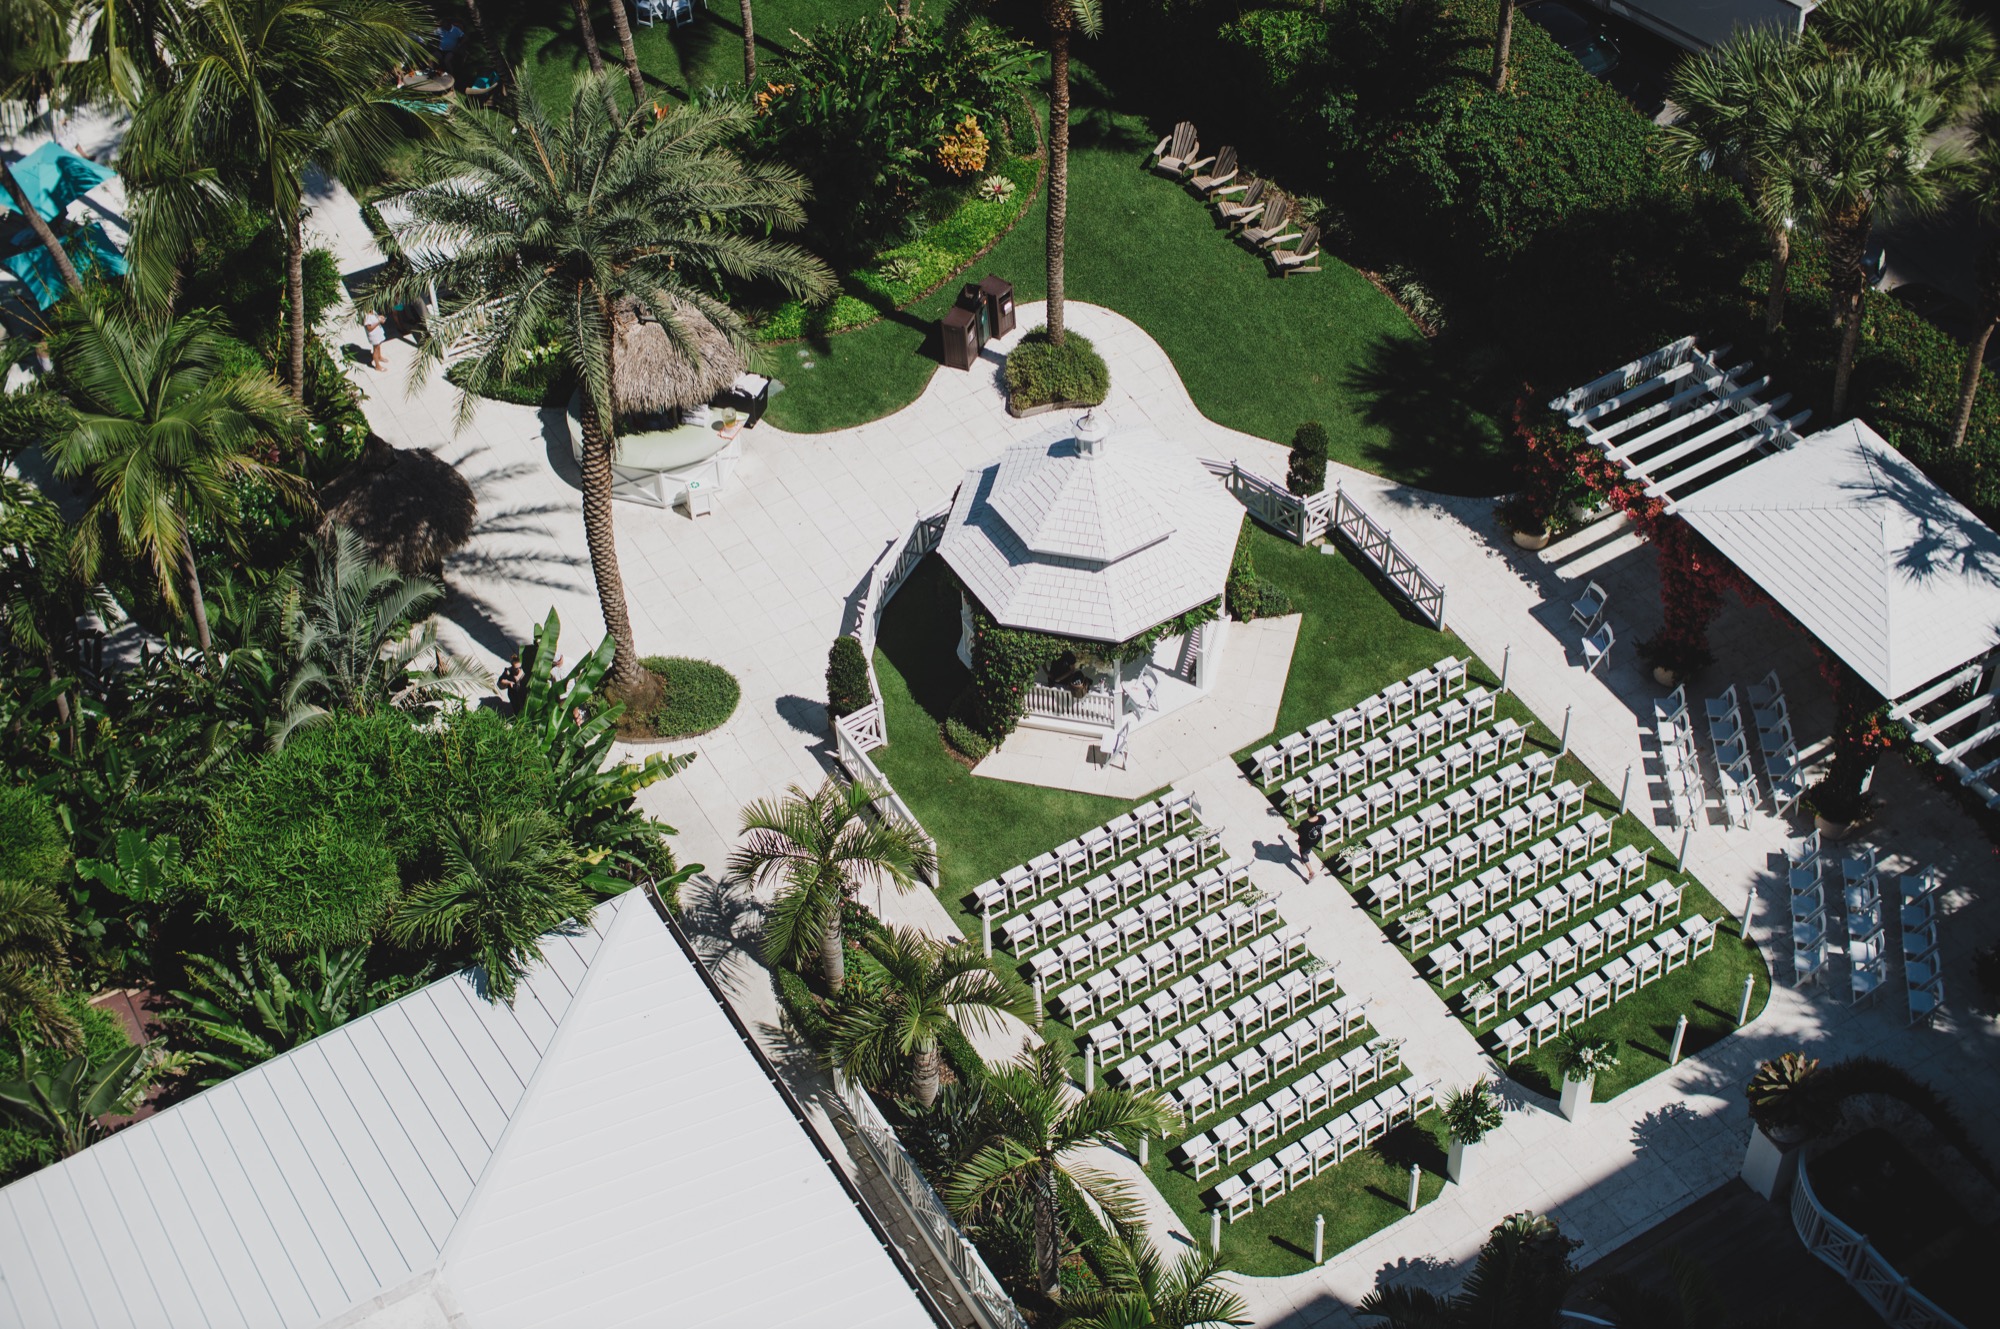 The Palms Hotel & Spa gazebo lawn